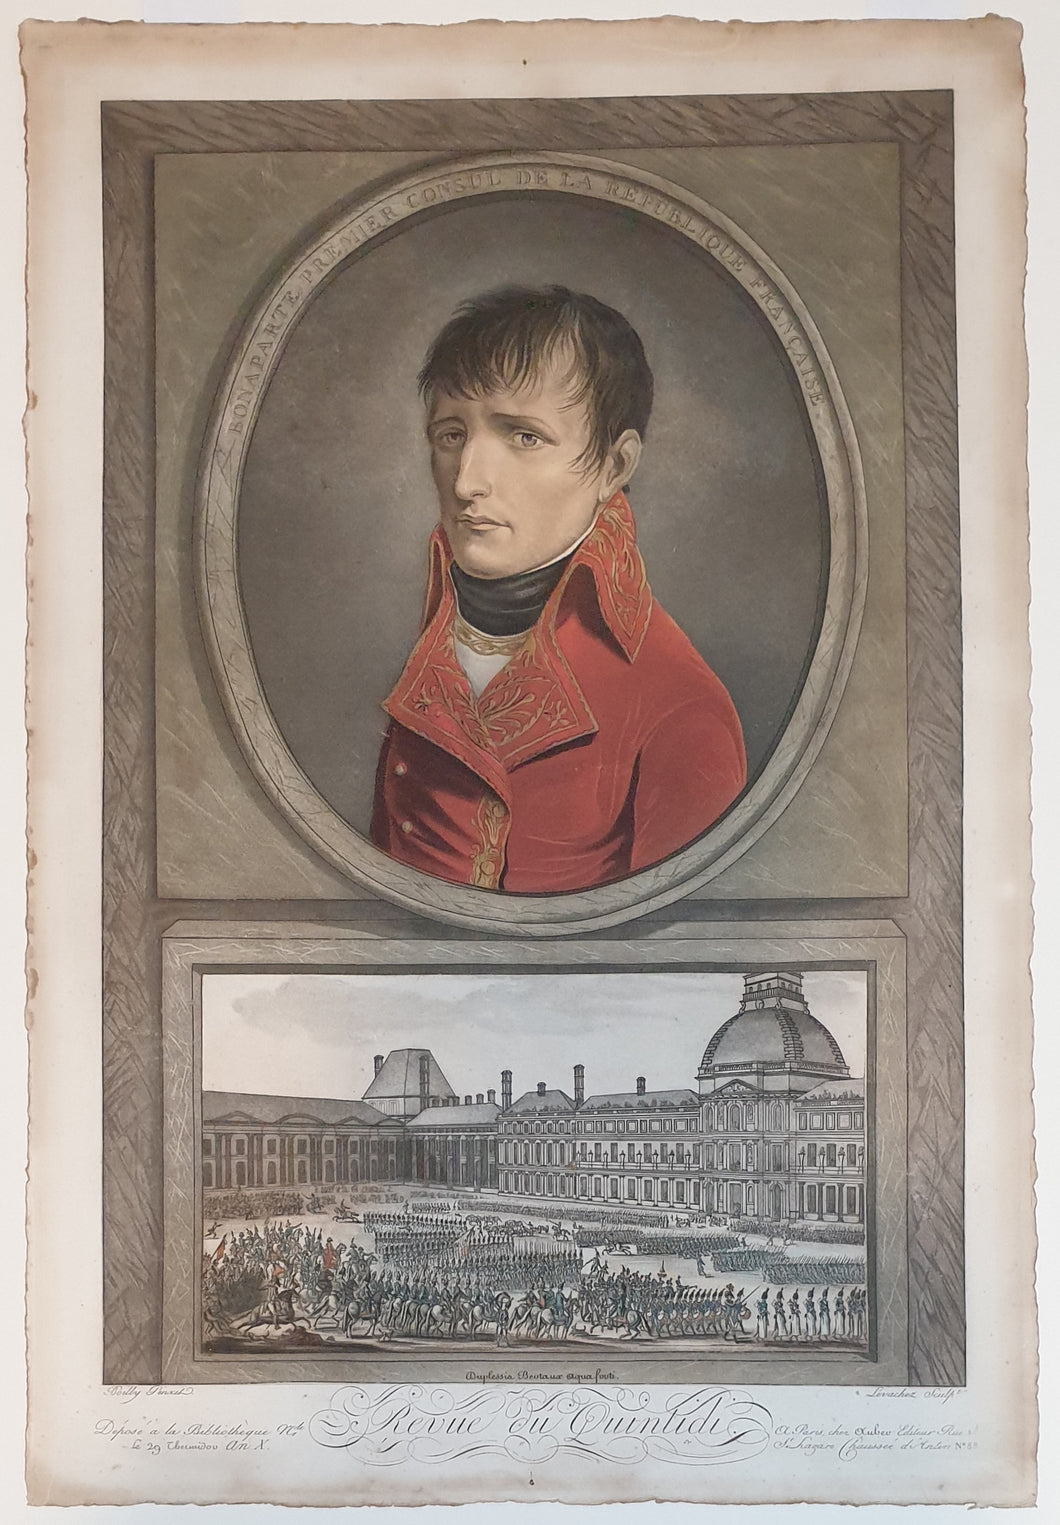 Napoleon Bonaparte Premier Consul De La Republique Française Aquatint Engraving By Levachez After Boilly 1802